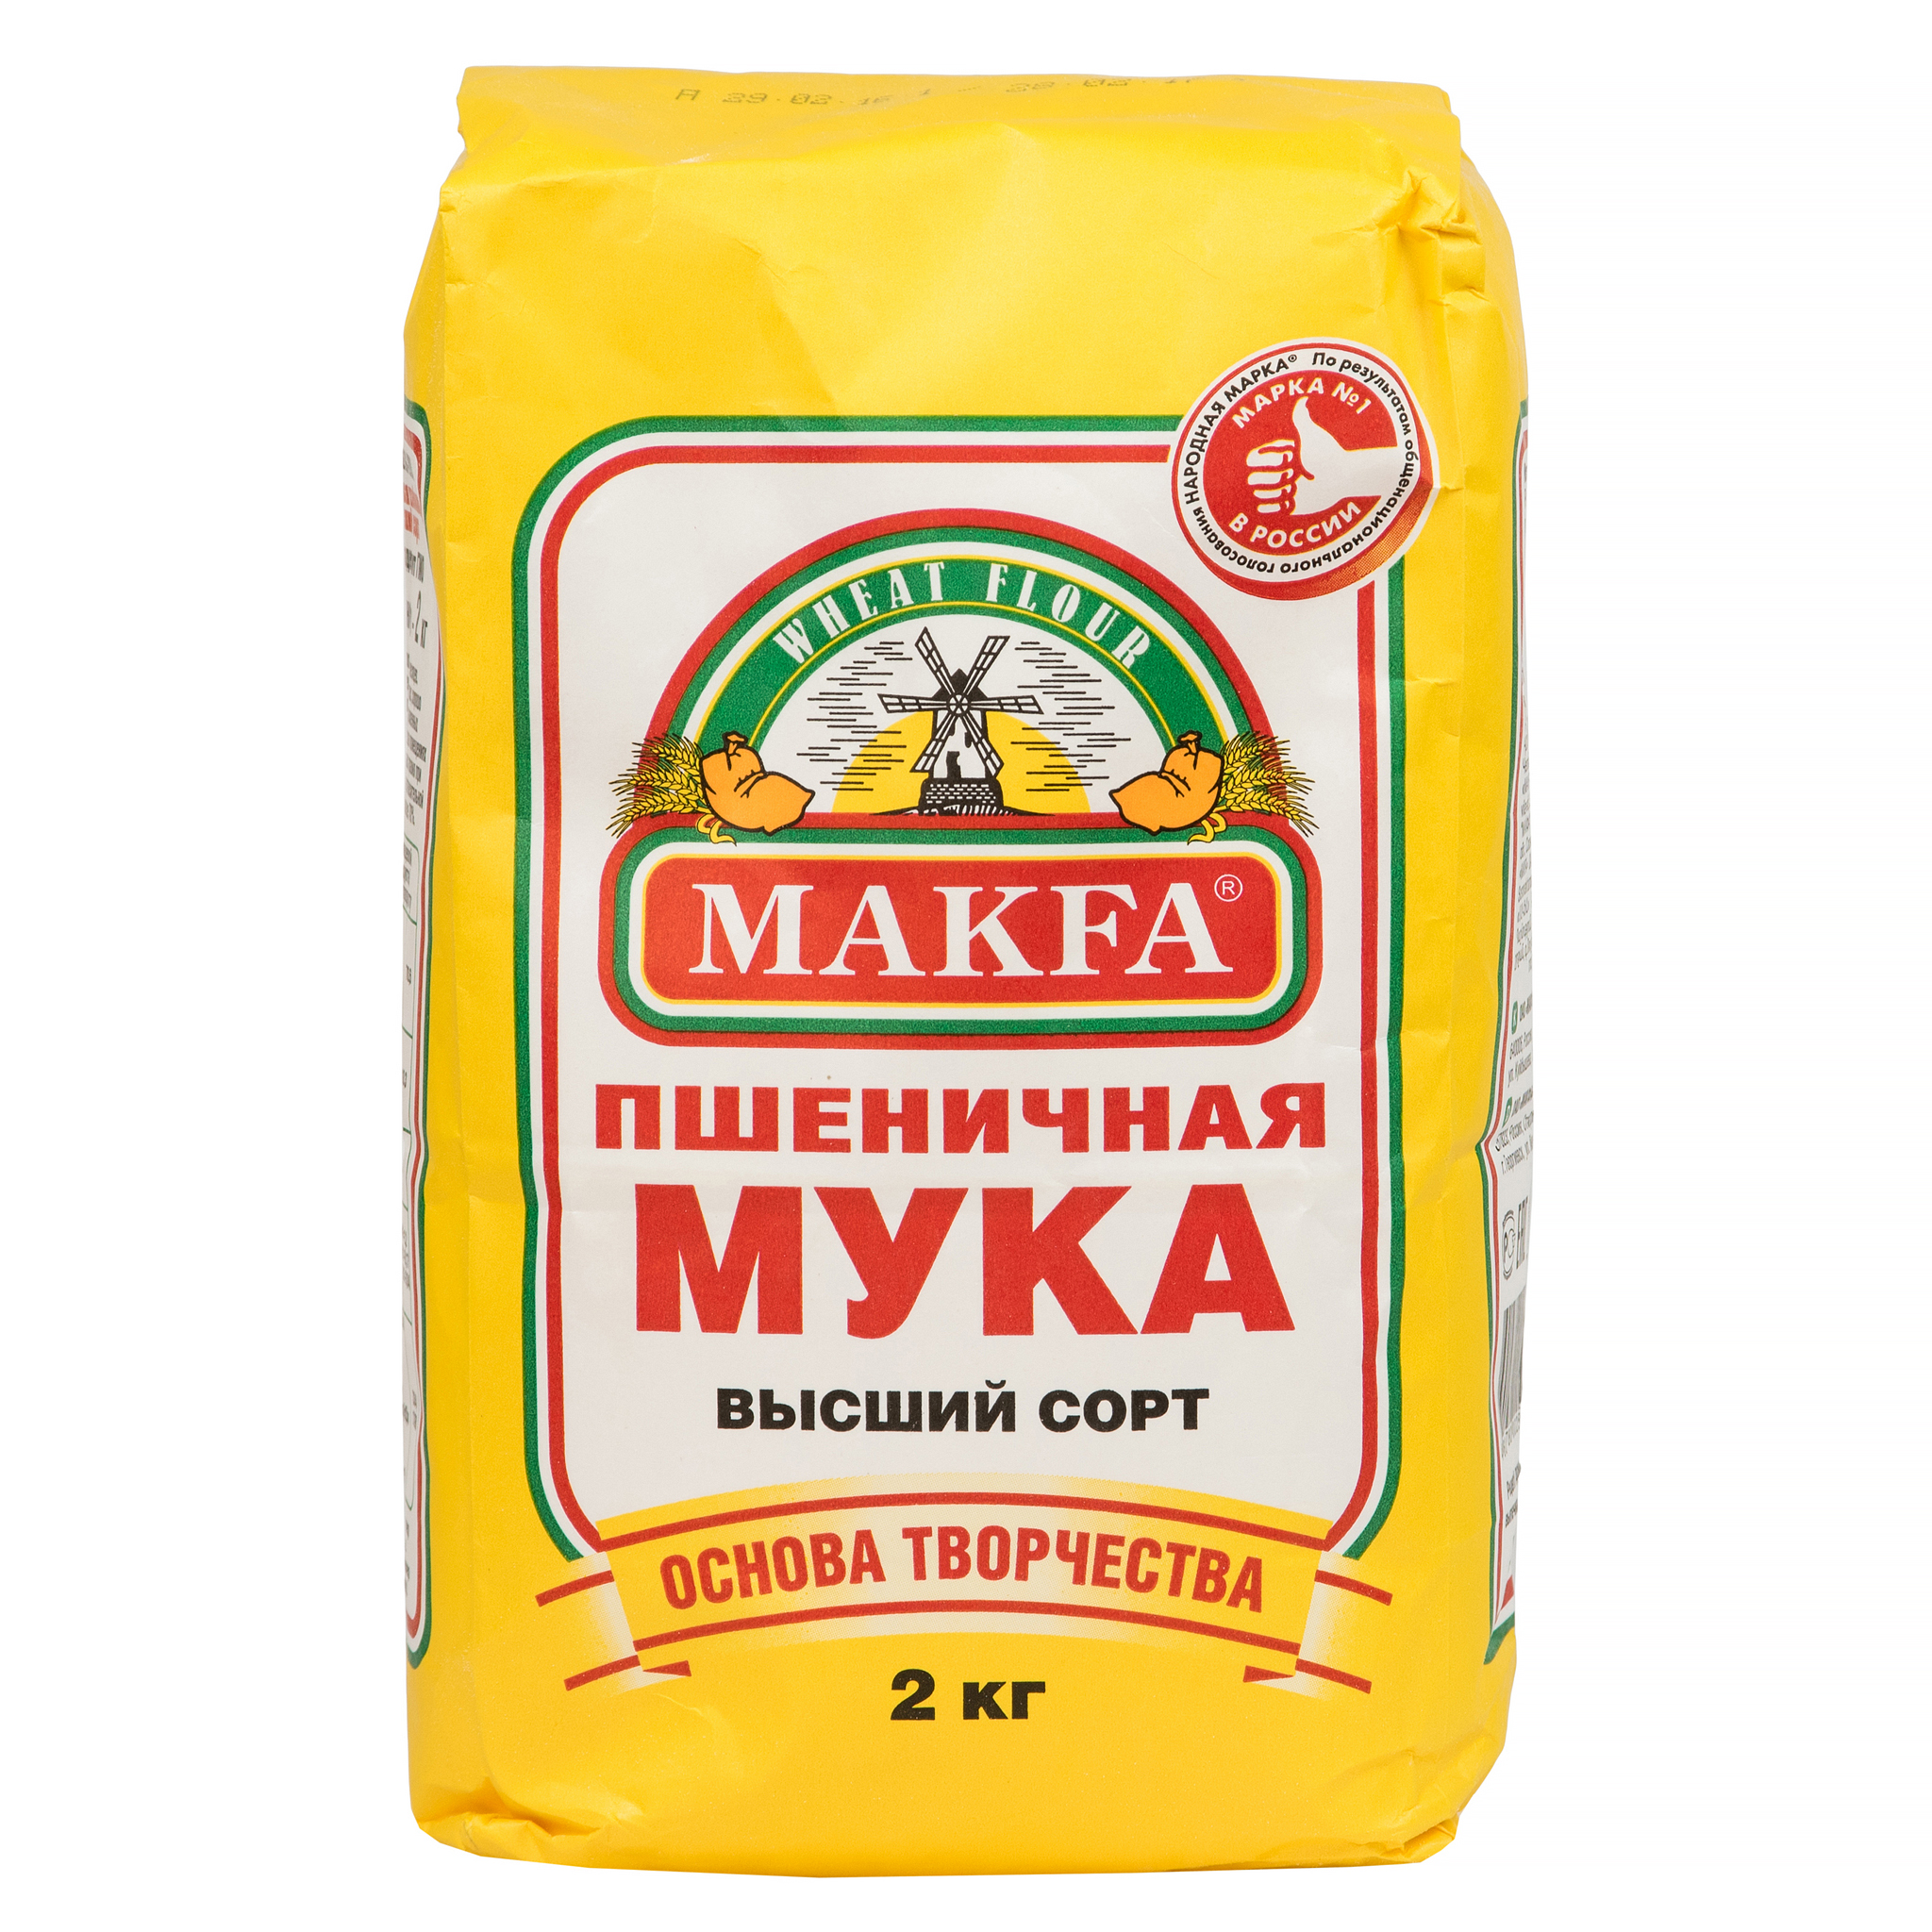 Пшеничная мука Makfa - рейтинг 5 по отзывам экспертов ☑ Экспертиза состава  и производителя | Роскачество